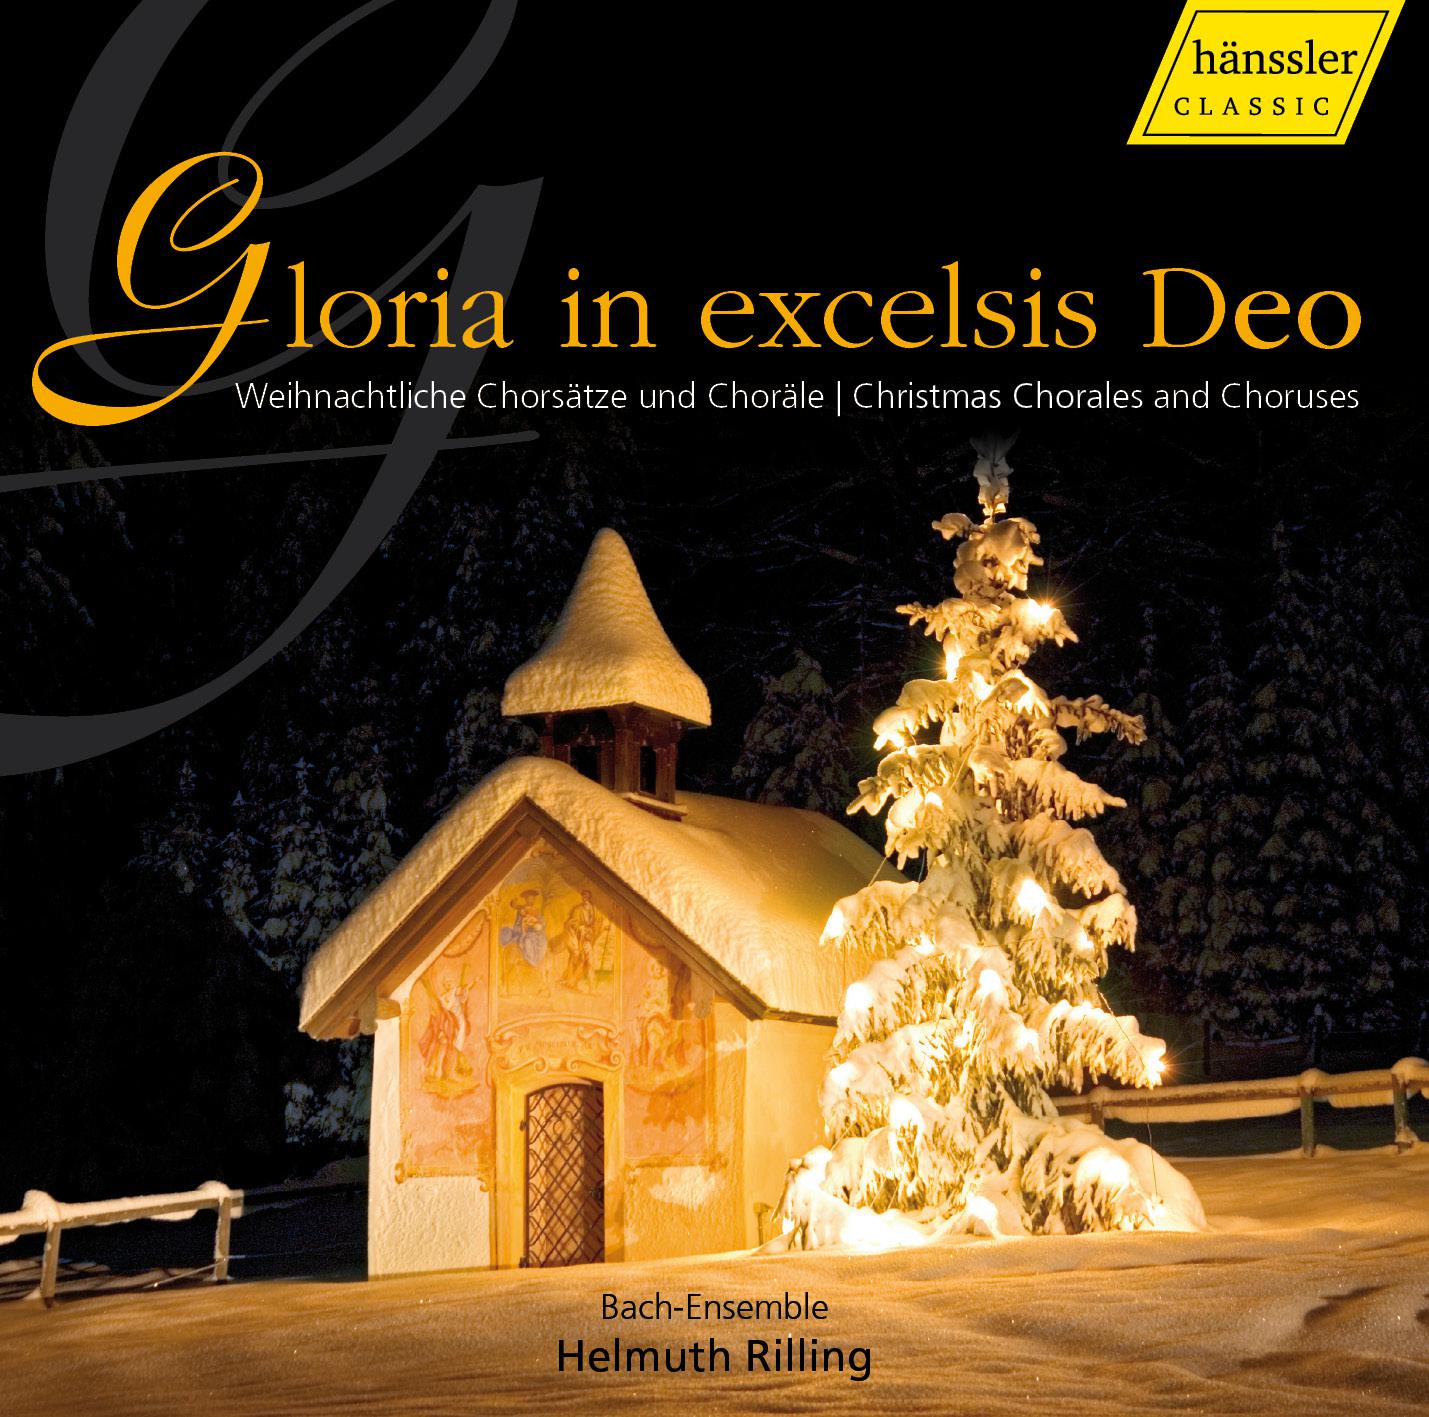 Gloria in excelsis Deo, BWV 191: Sicut erat in principio